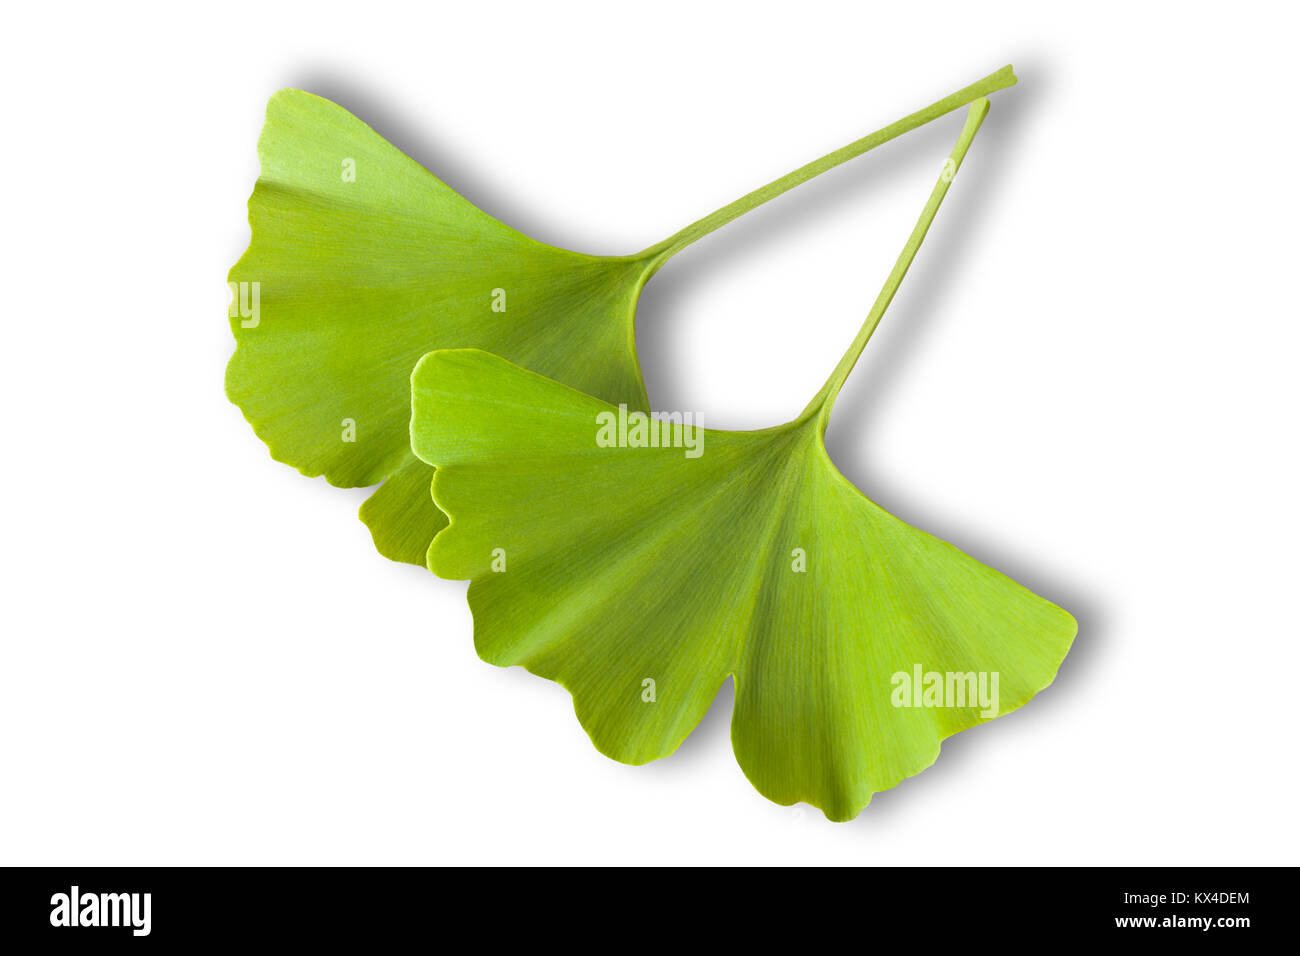 Ginkgo biloba leaves isolated on white background Stock Photo